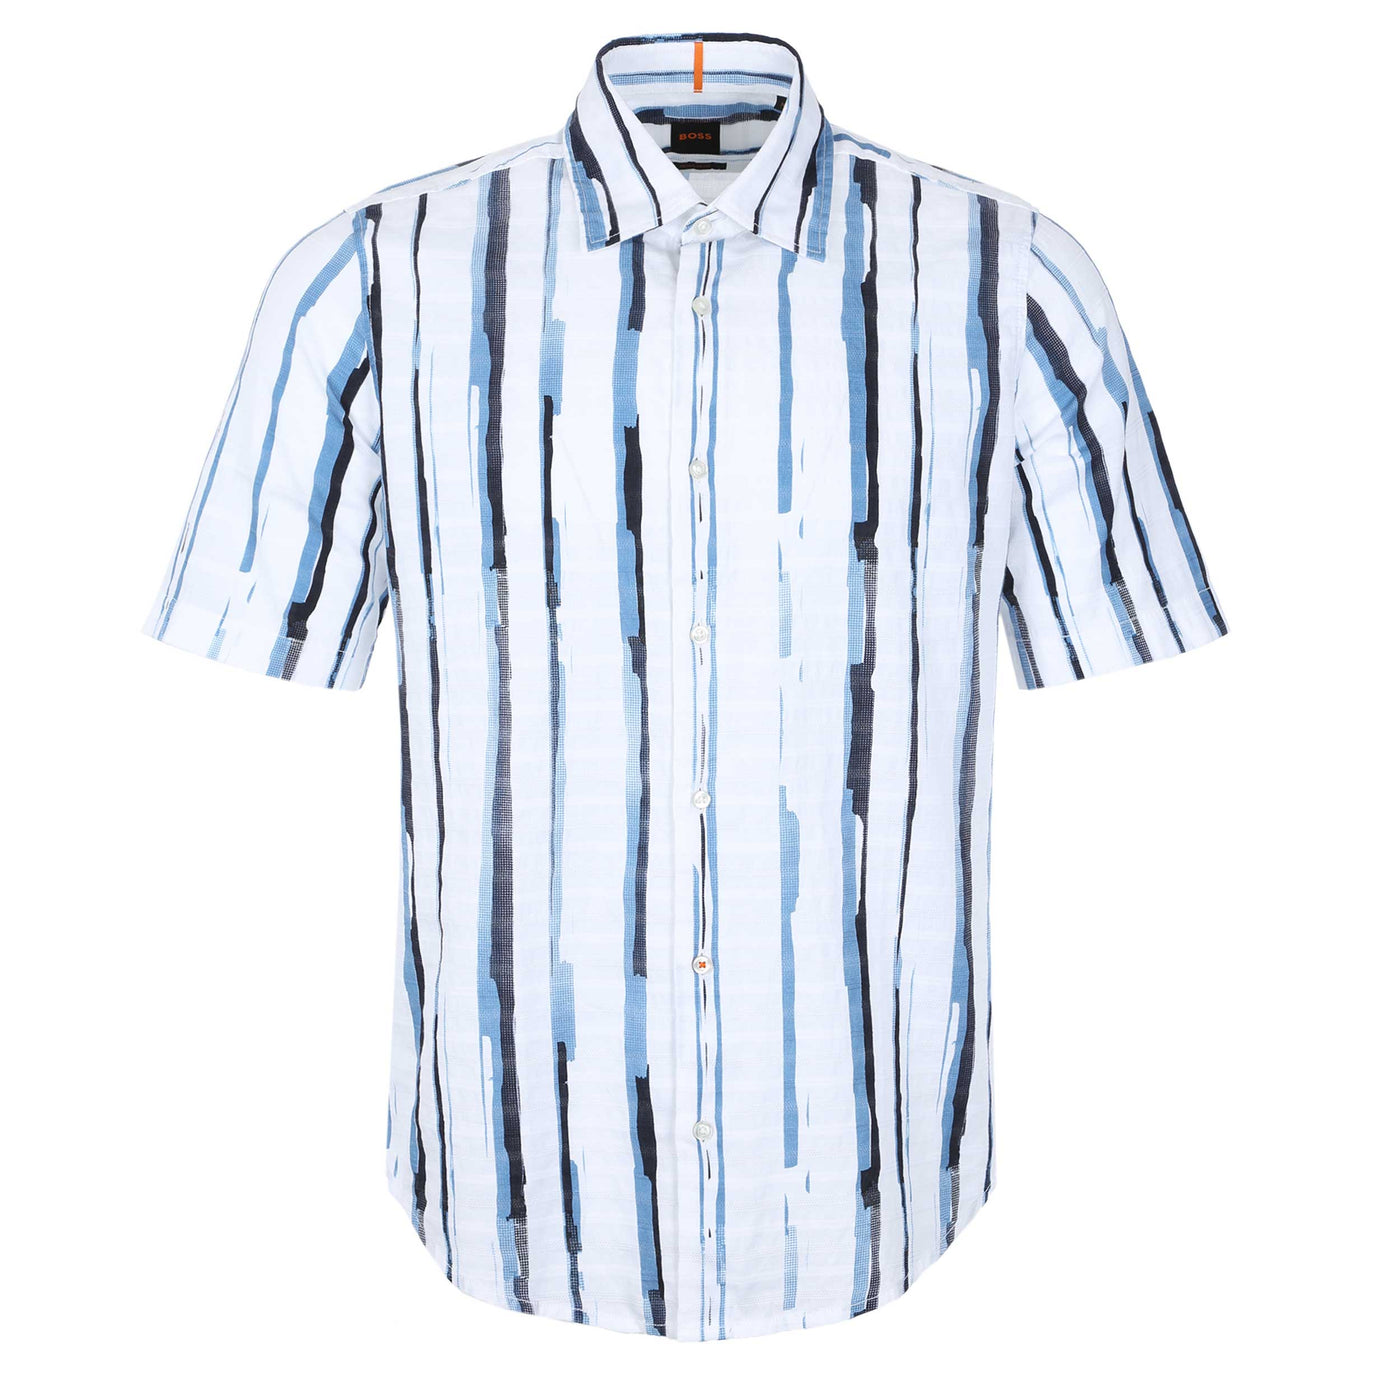 BOSS Rash 2 Short Sleeve Shirt in White & Blue